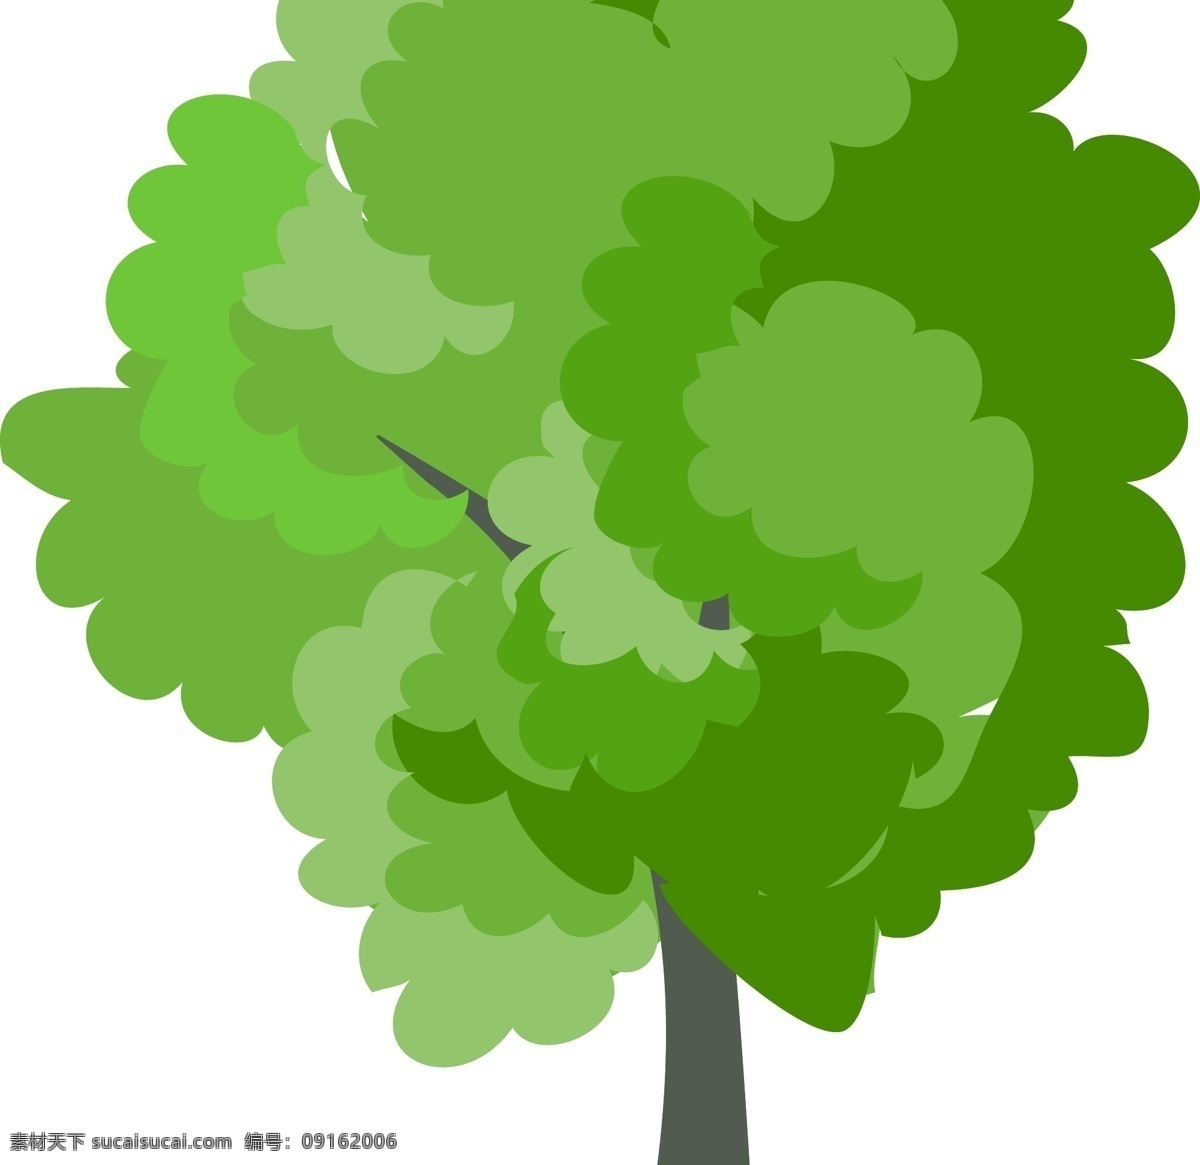 树 大树 矢量树 树木 夏天 盛夏 绿叶 植物 樟树 底纹背景 矢量素材 生物世界 树木树叶